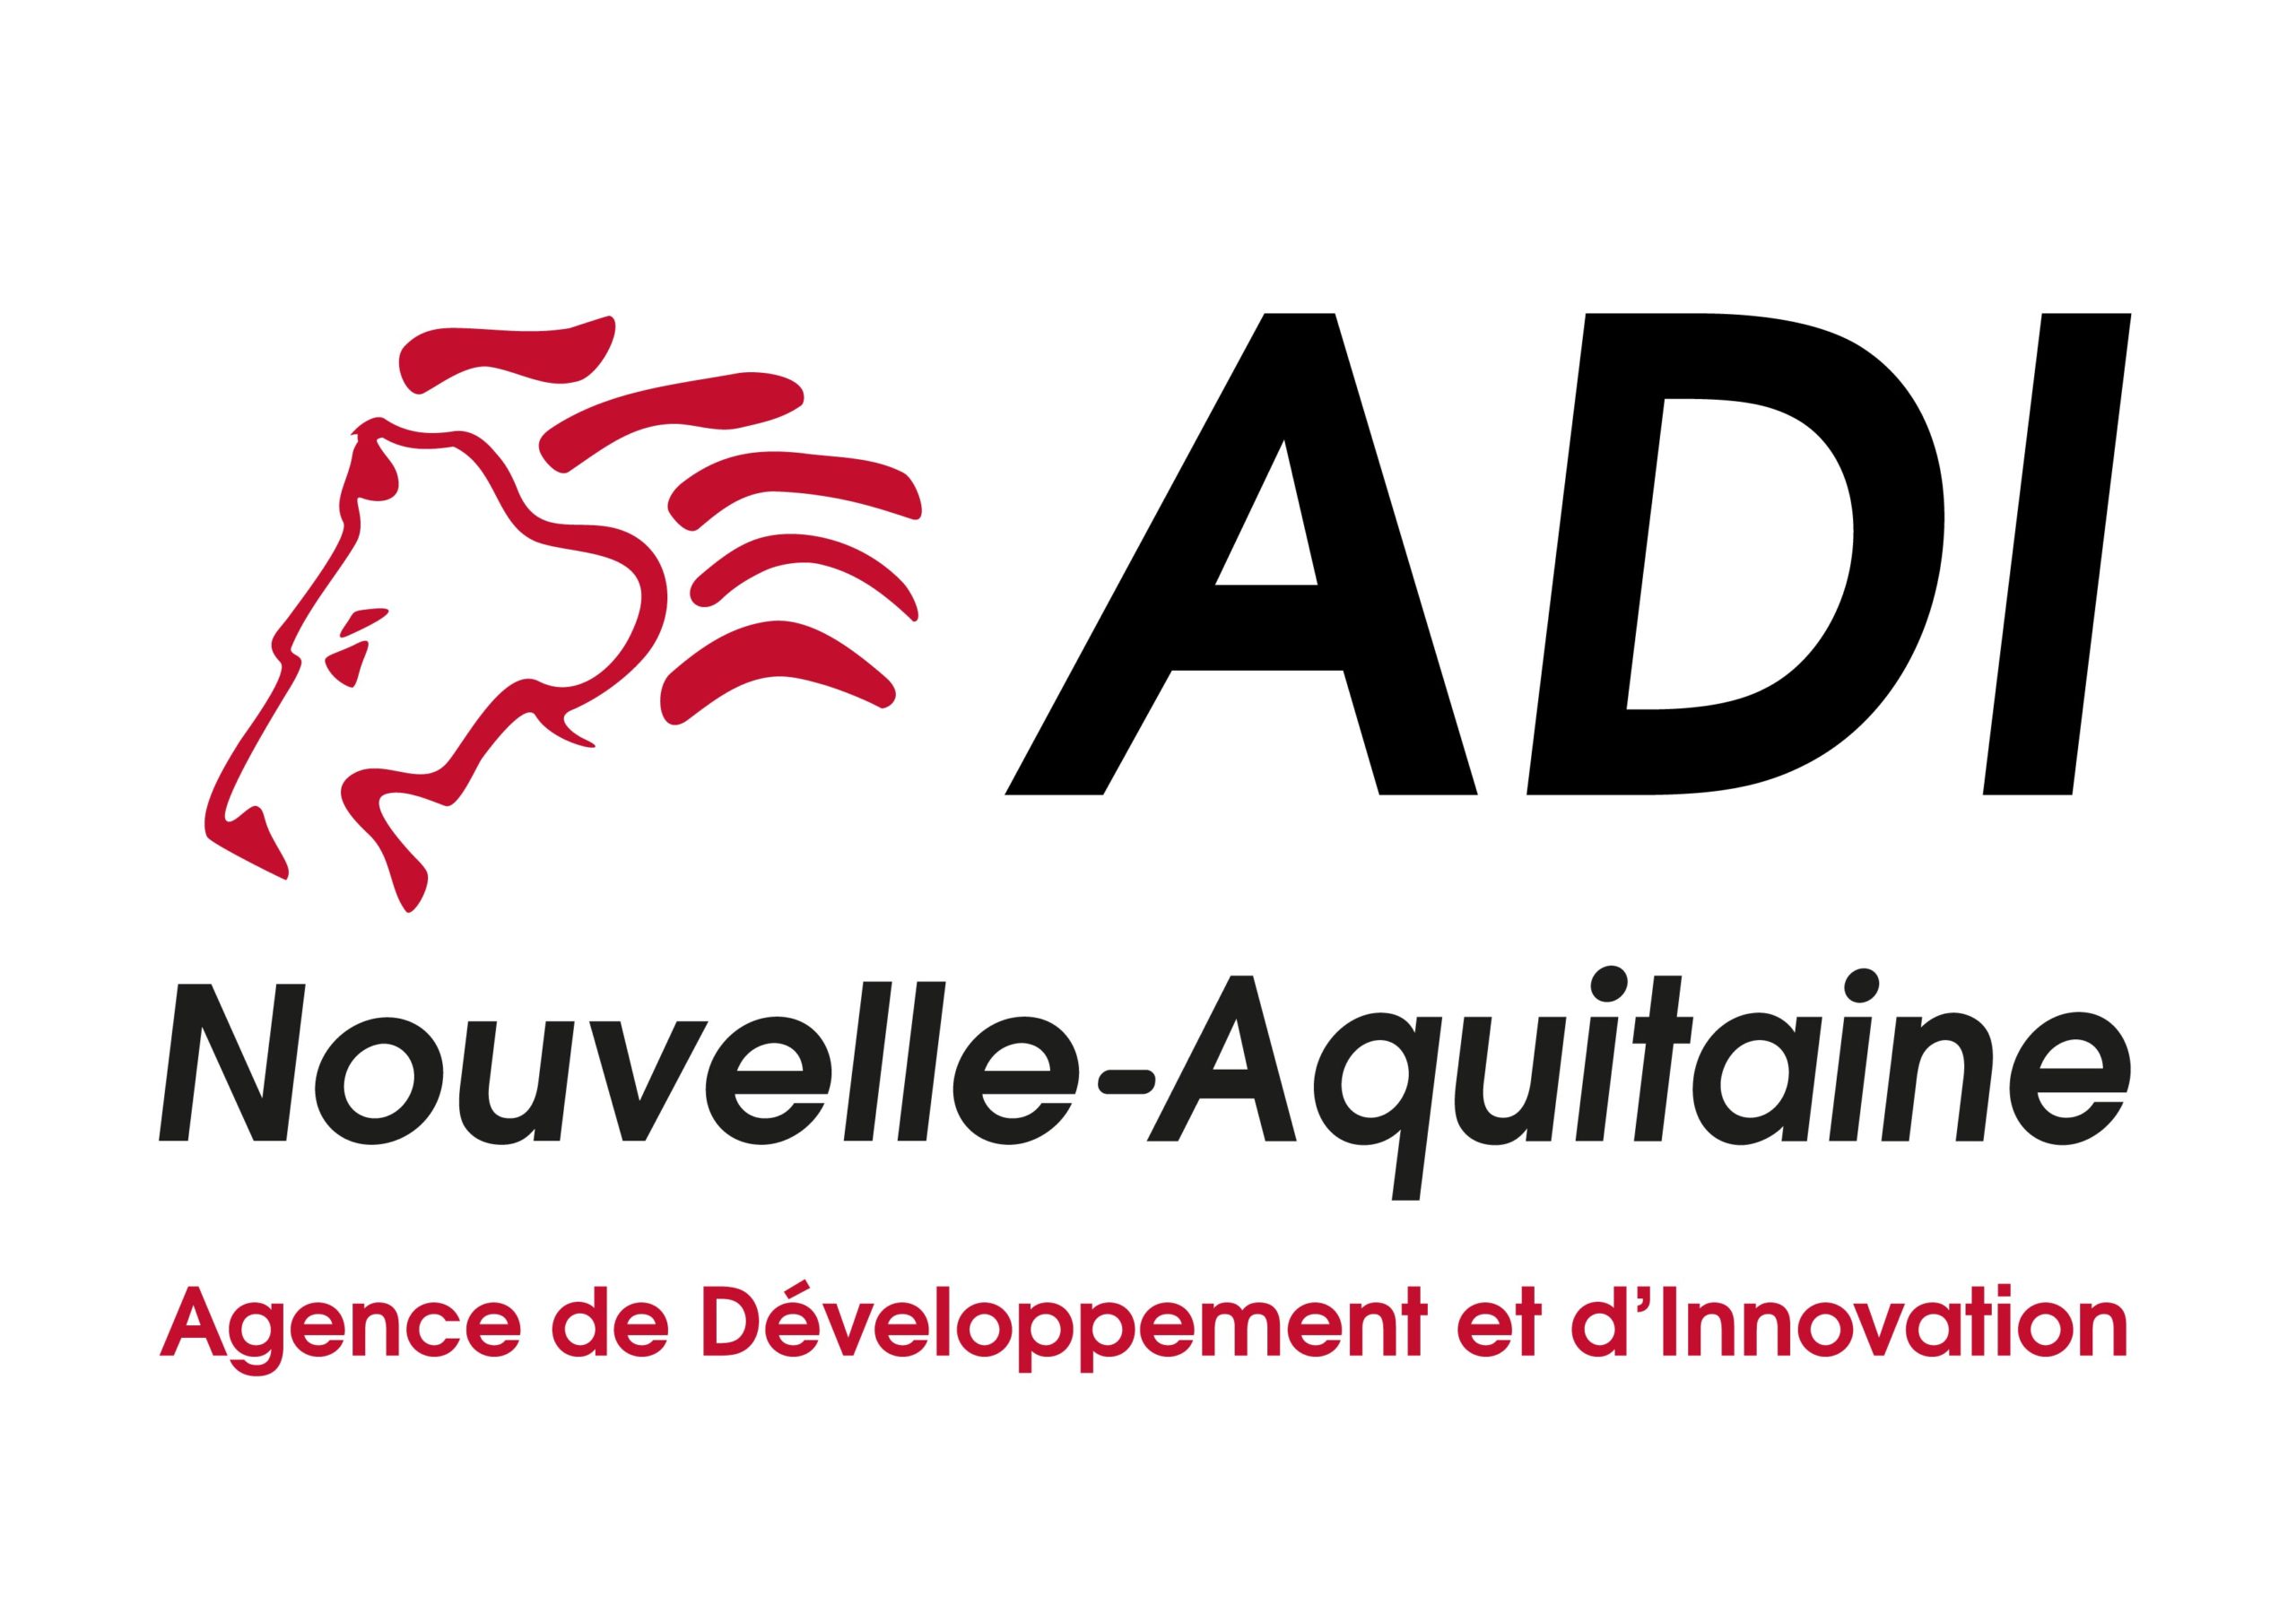 ADI Nouvelle Aquitaine